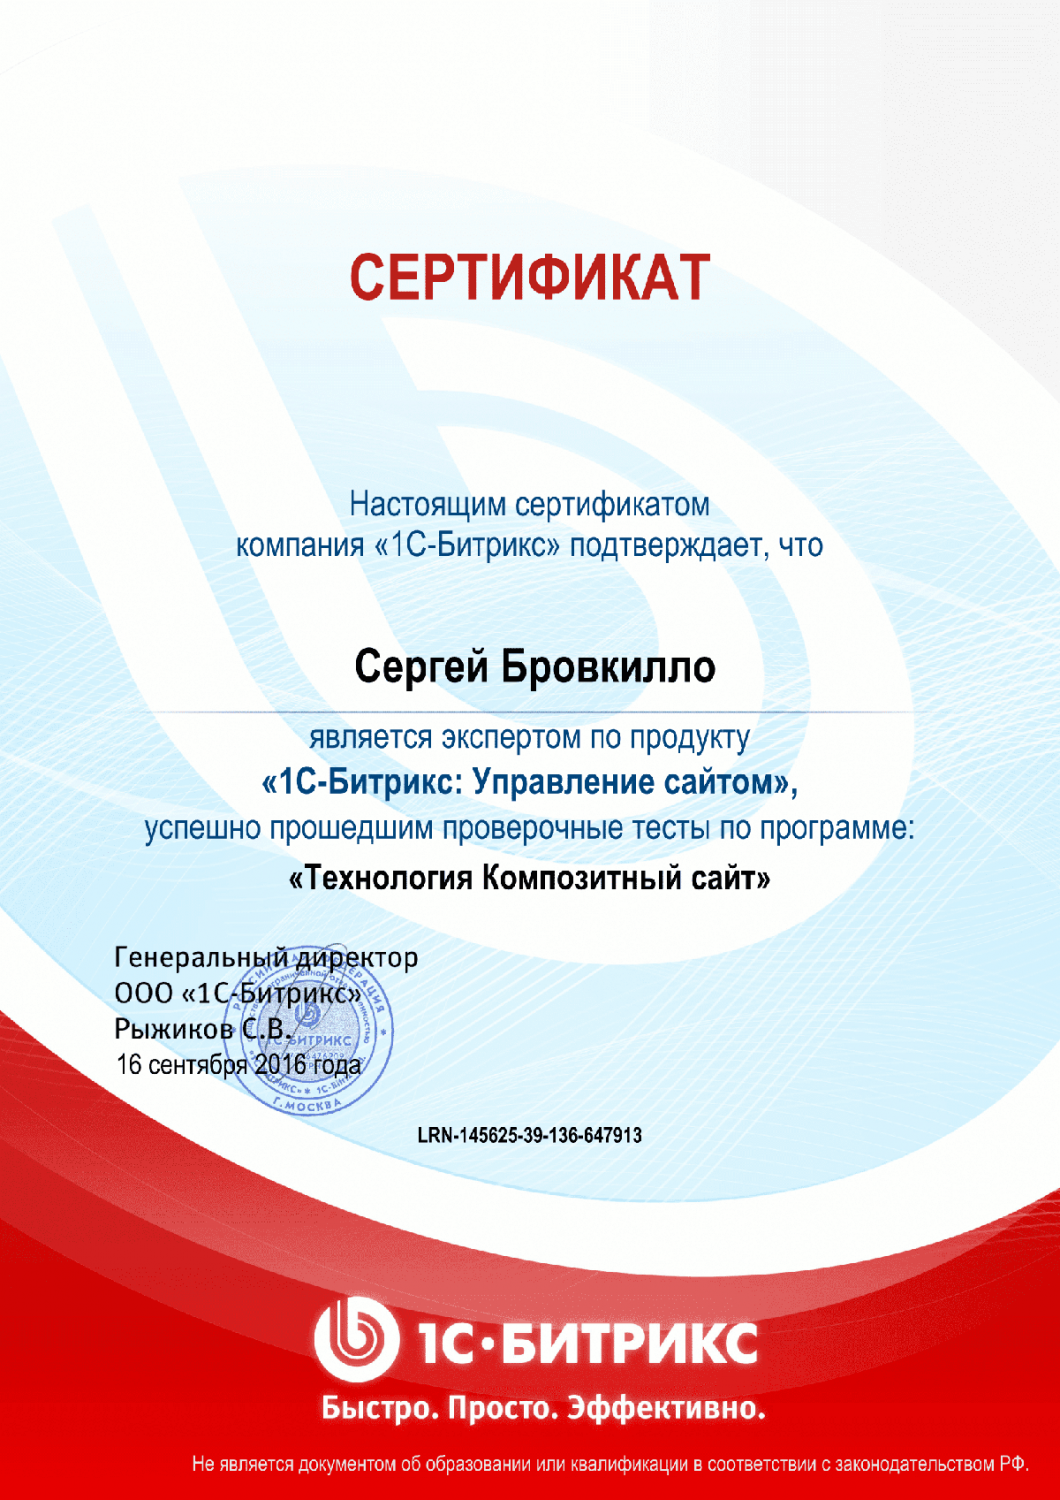 Сертификат "Технология Композитный сайт" в Комсомольска-на-Амуре